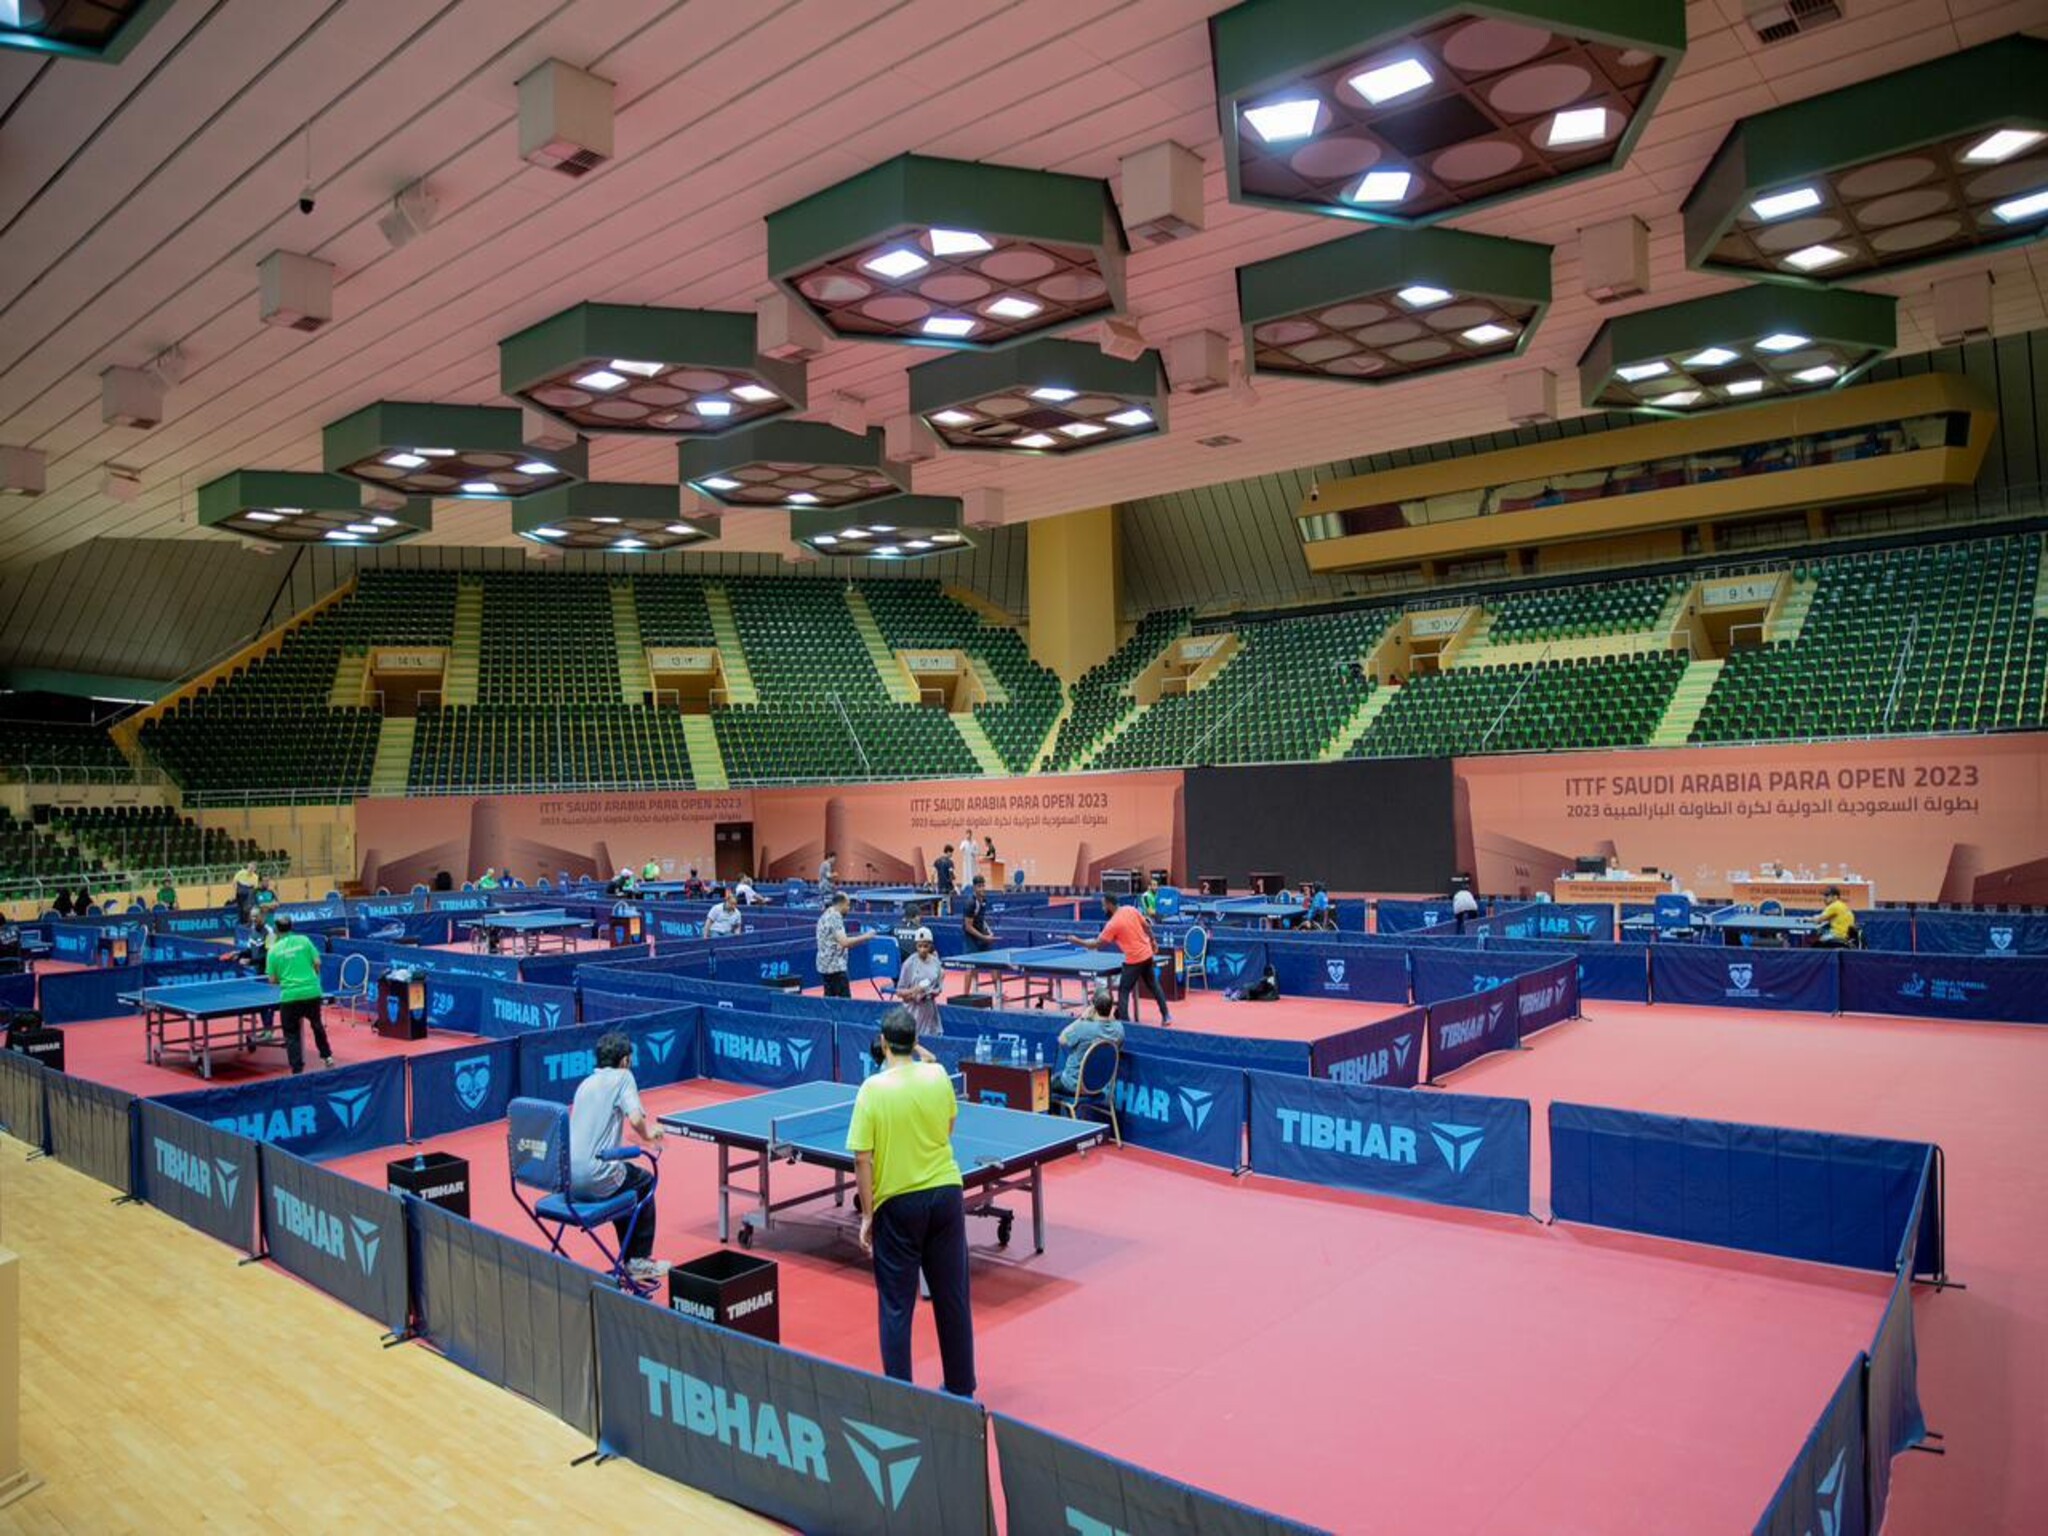 اليوم انطلاق بطولة السعودية الدولية لكرة الطاولة البارالمبية في الرياض